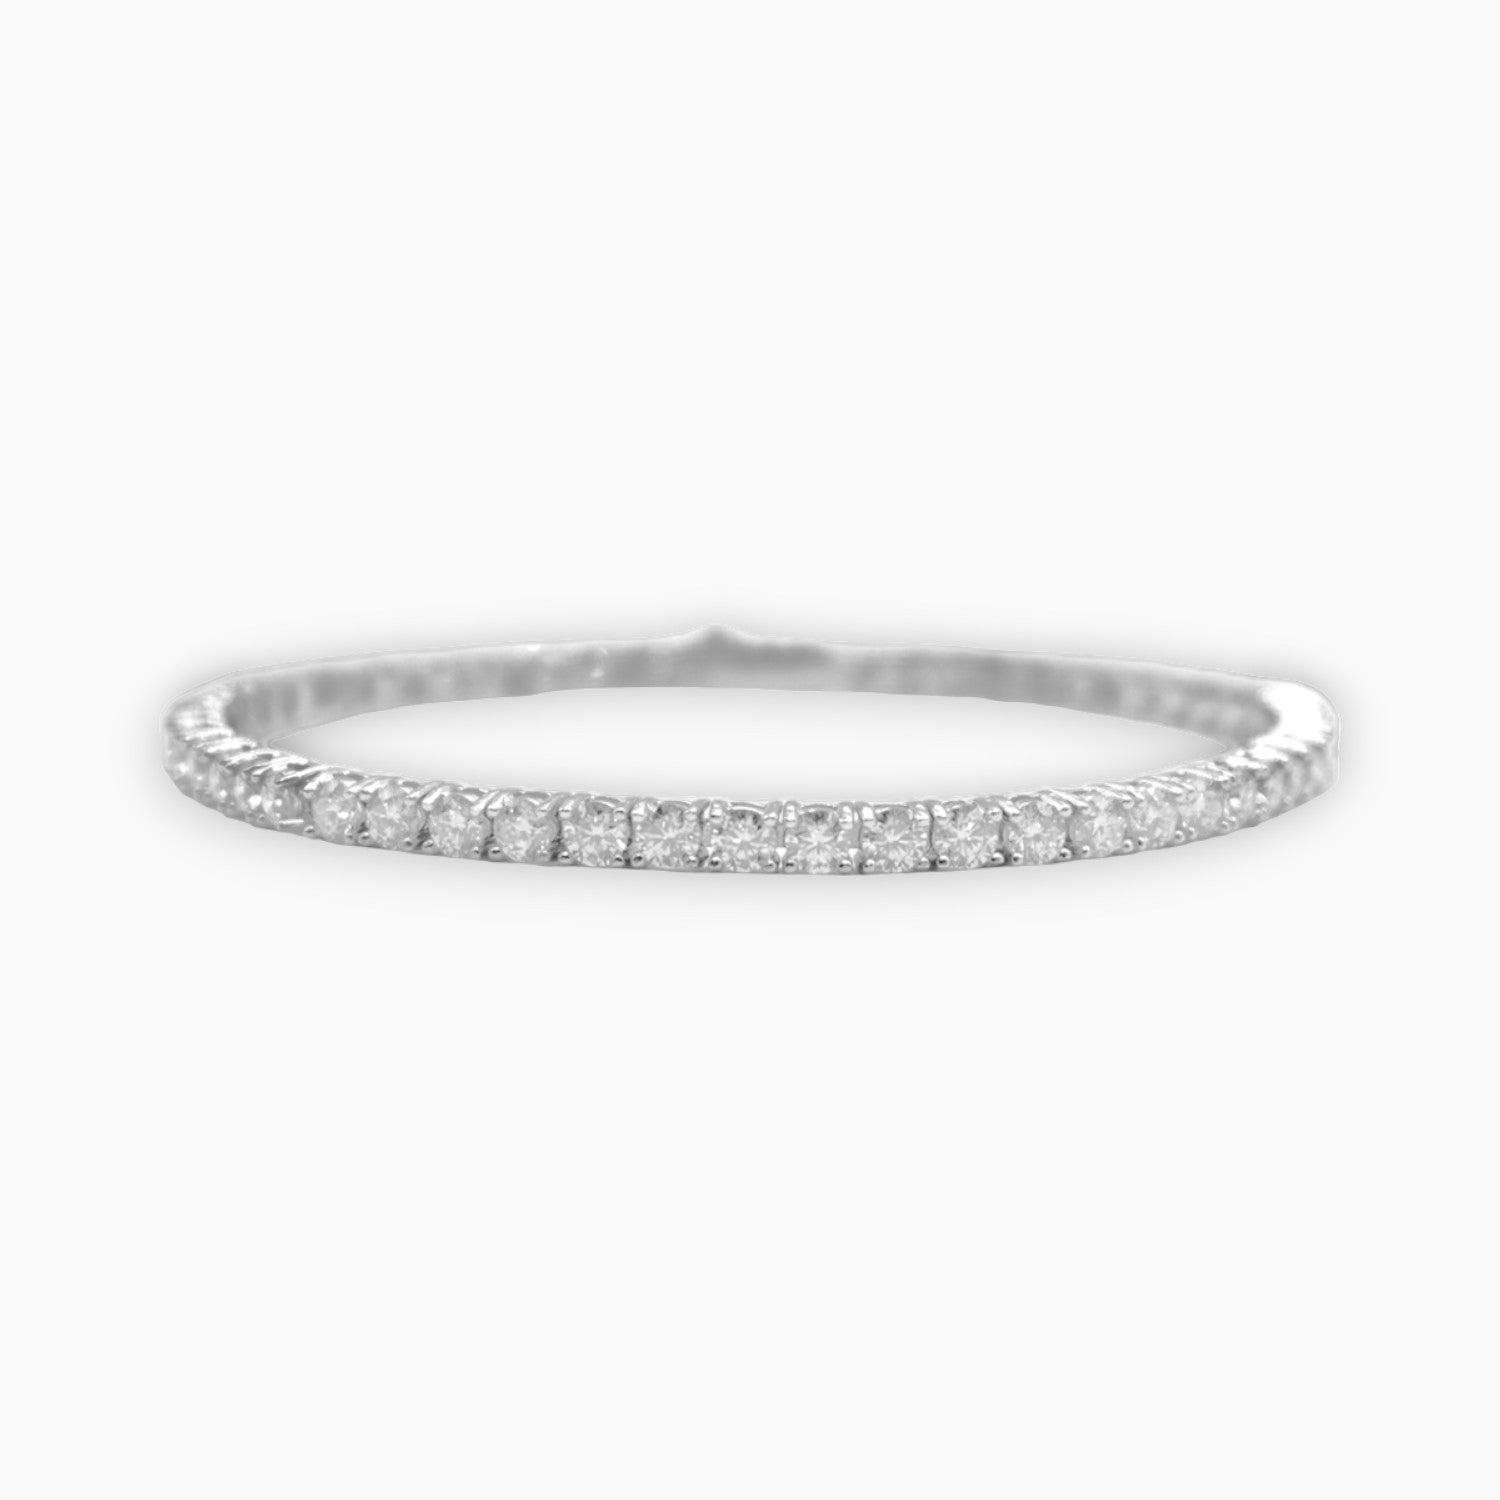 3mm silver moissanite tennis bracelet